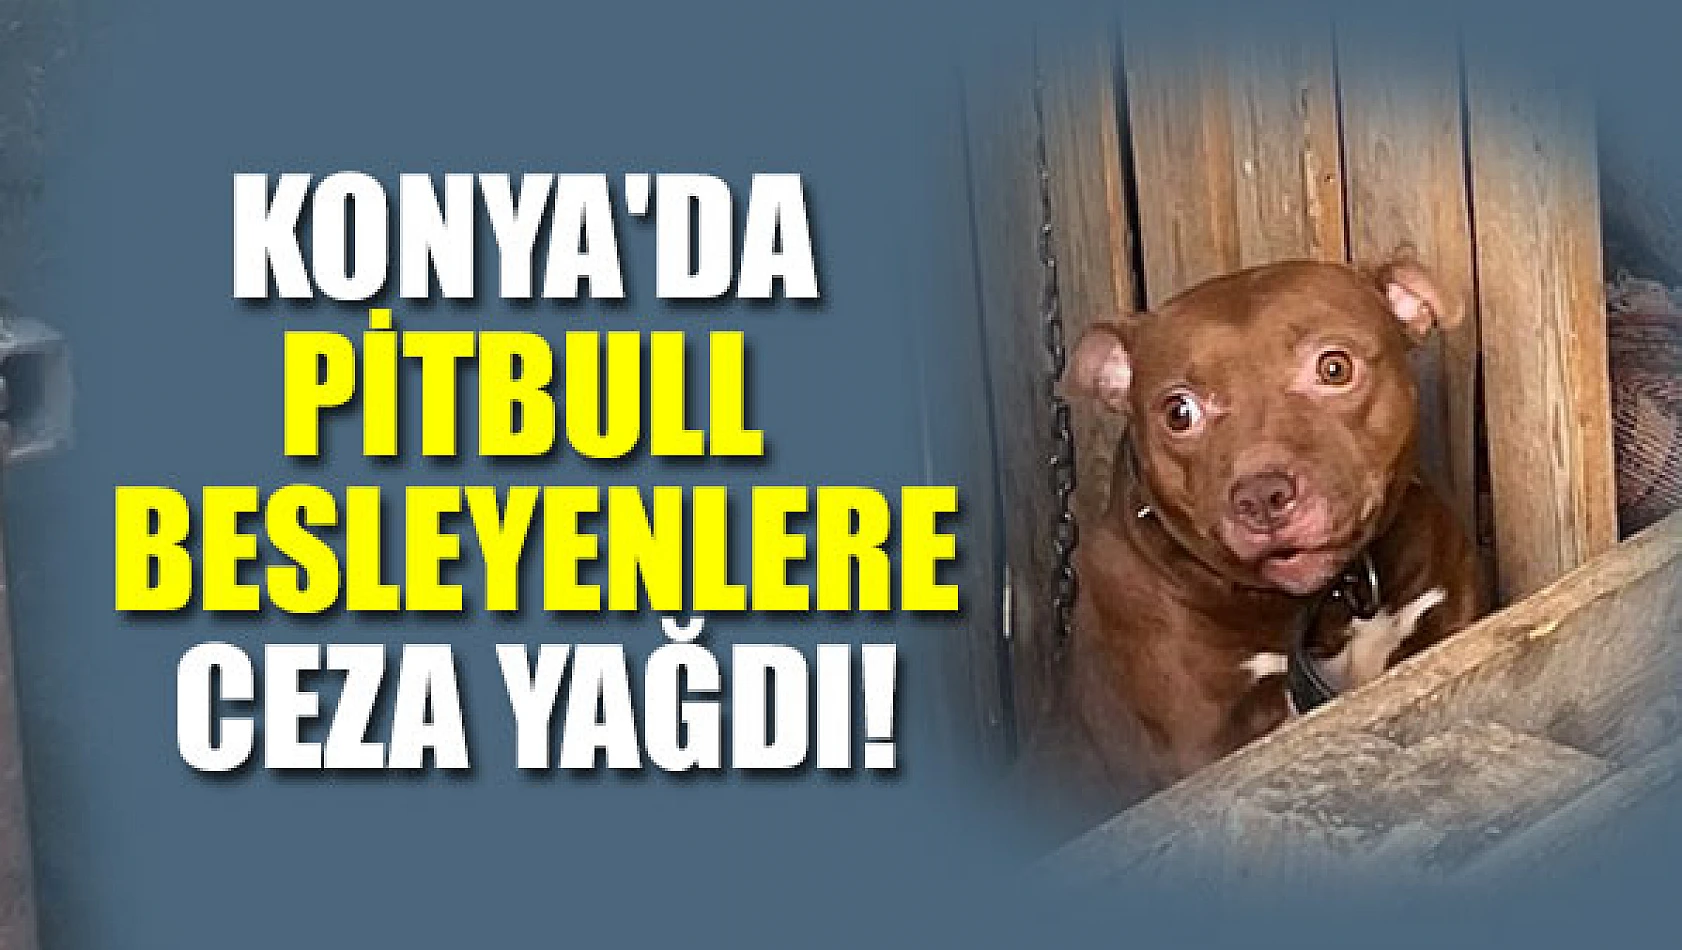 Konya'da pitbull besleyenlere ceza yağdı!